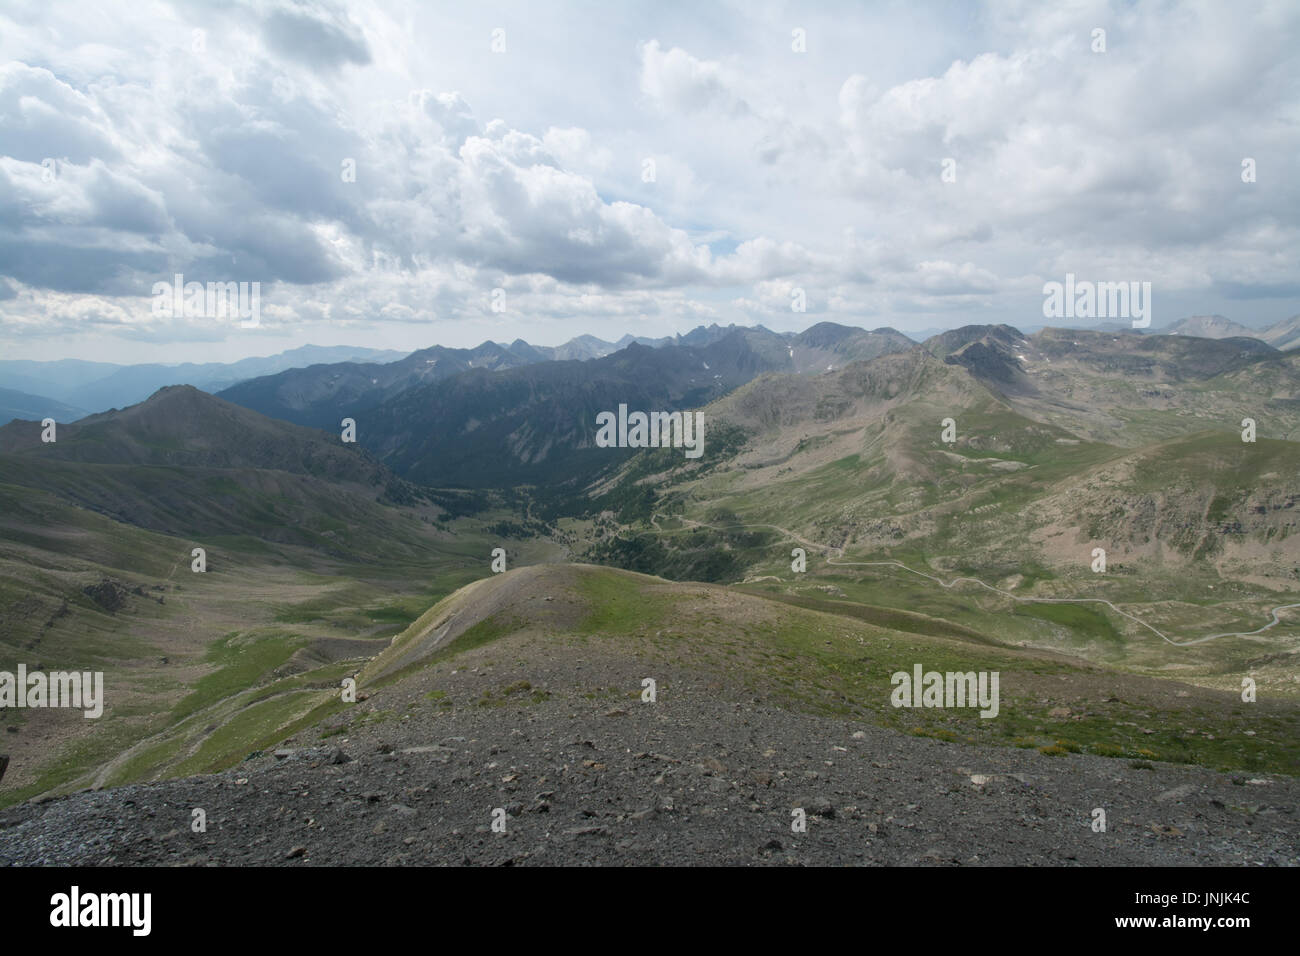 Visualizzare al Col de la Bonette sulle Alpi francesi - paesaggio montano con cielo nuvoloso Foto Stock